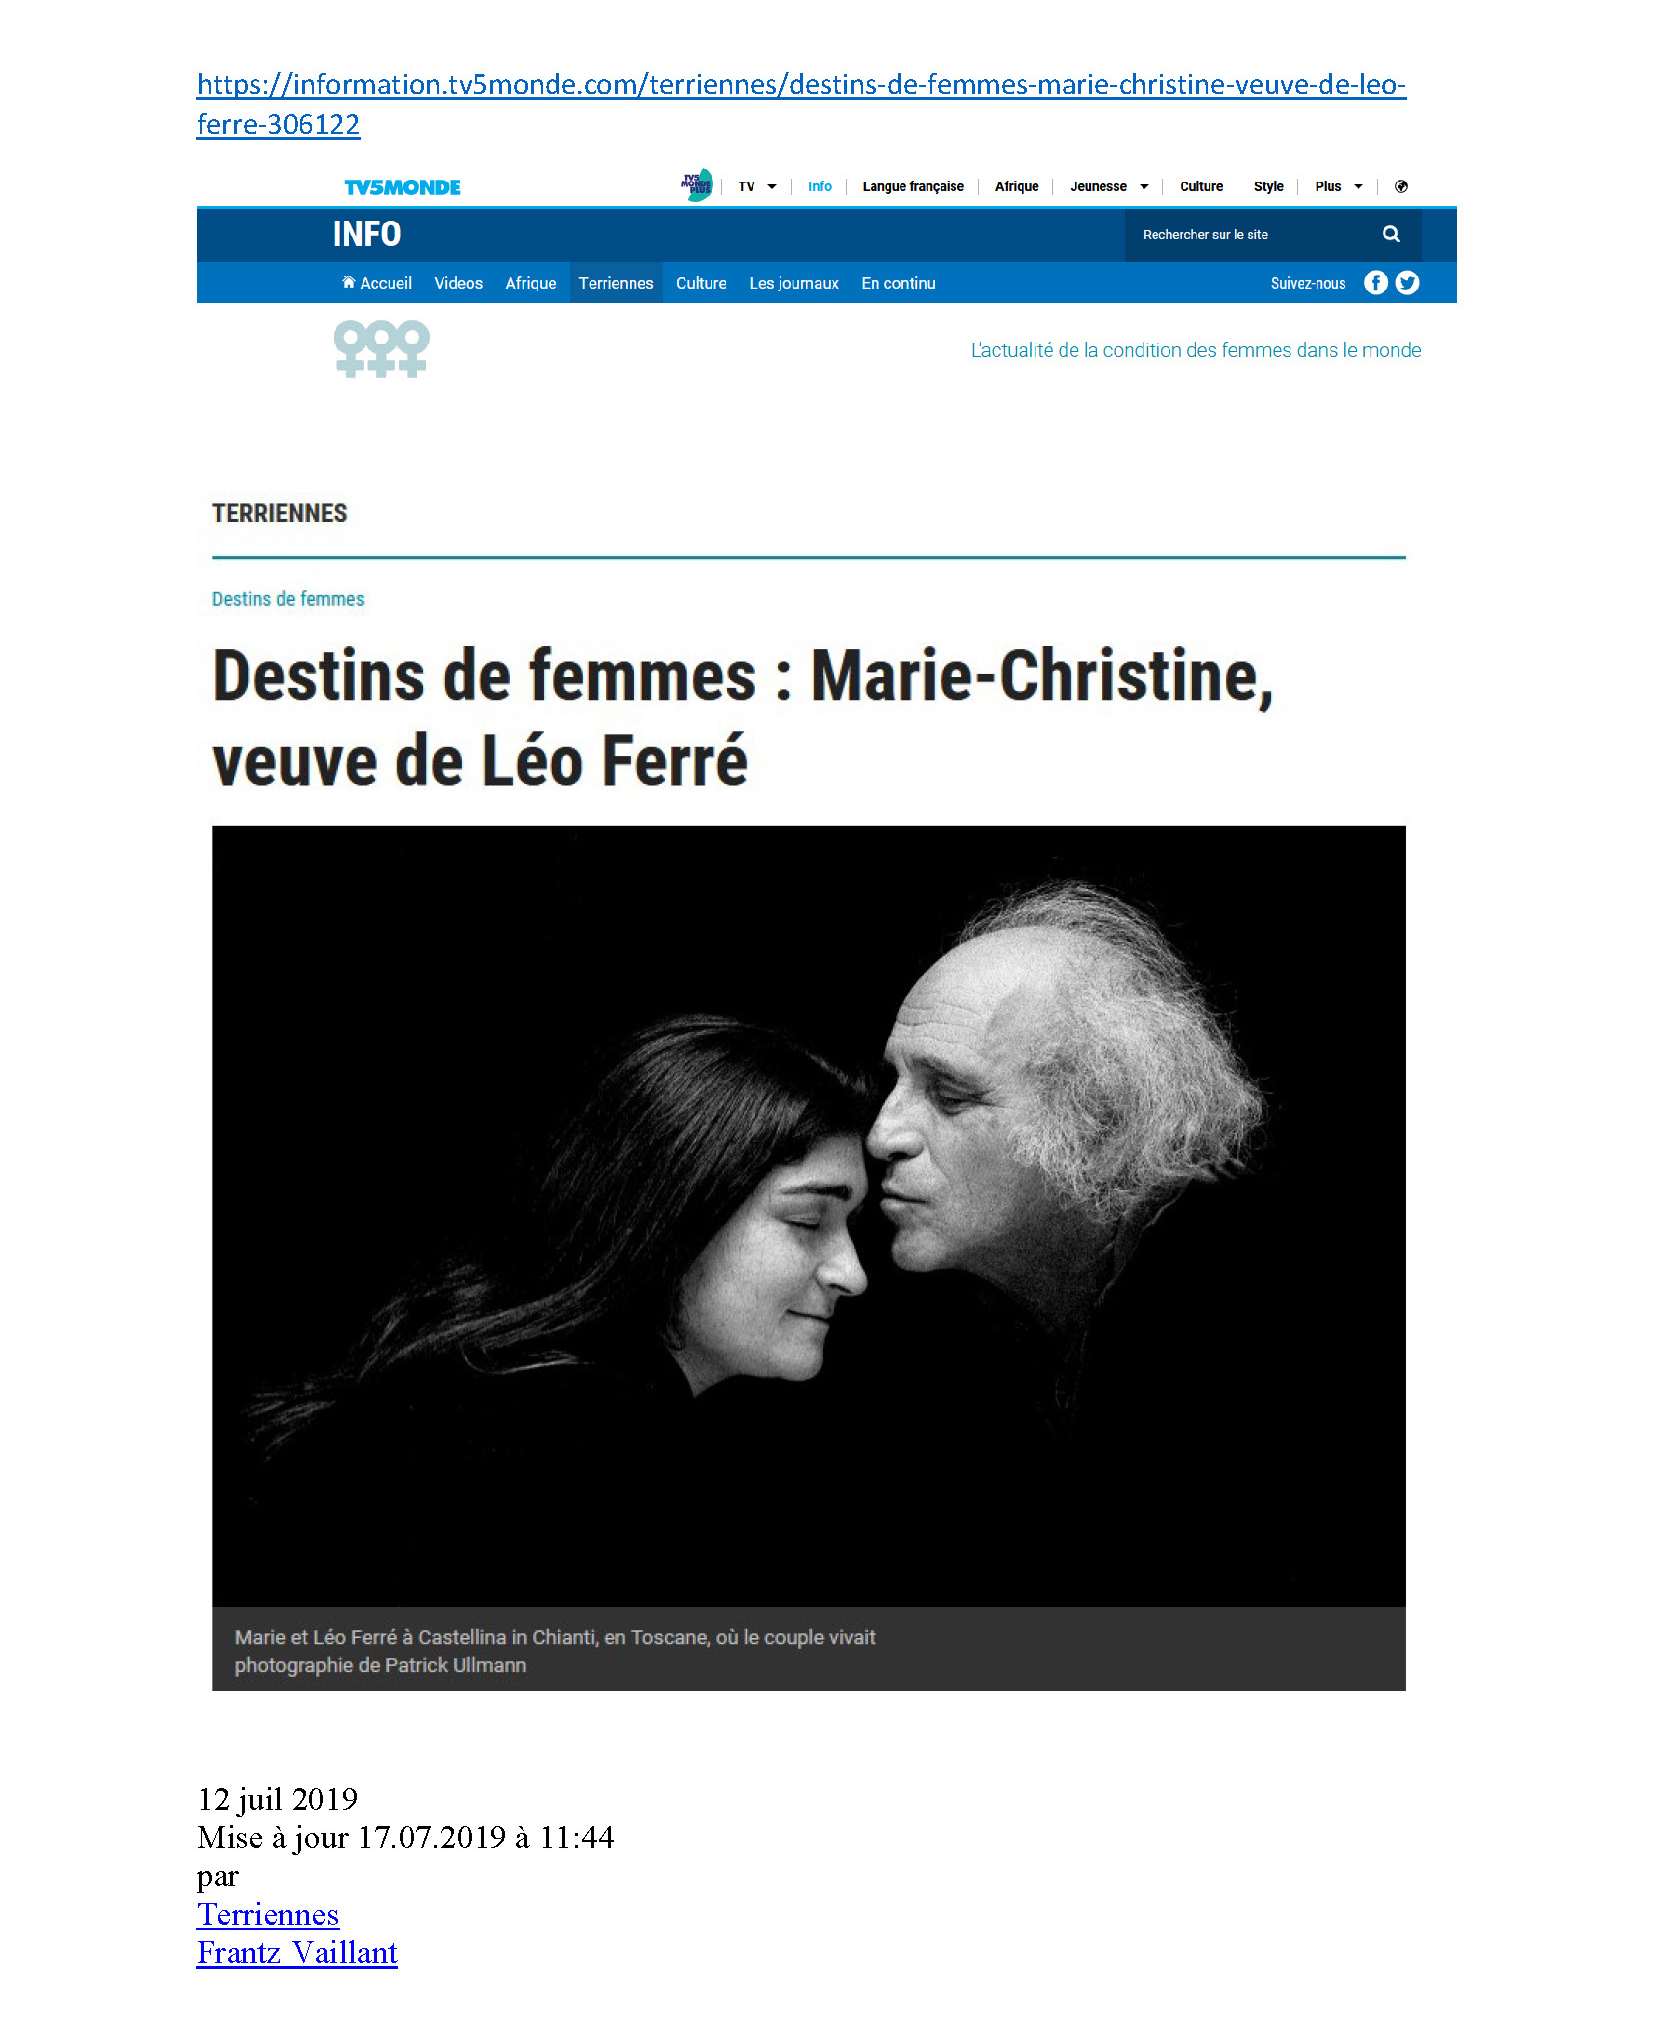  12/07/2019 TV5 Marie-Christine veuve de Léo Ferré par Frantz Vaillant